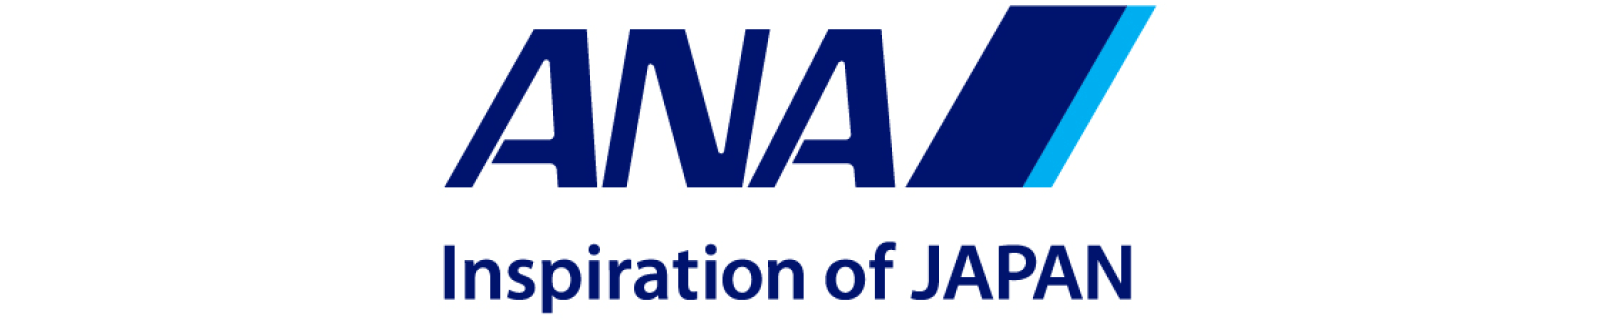 ANA 全日本空輸株式会社